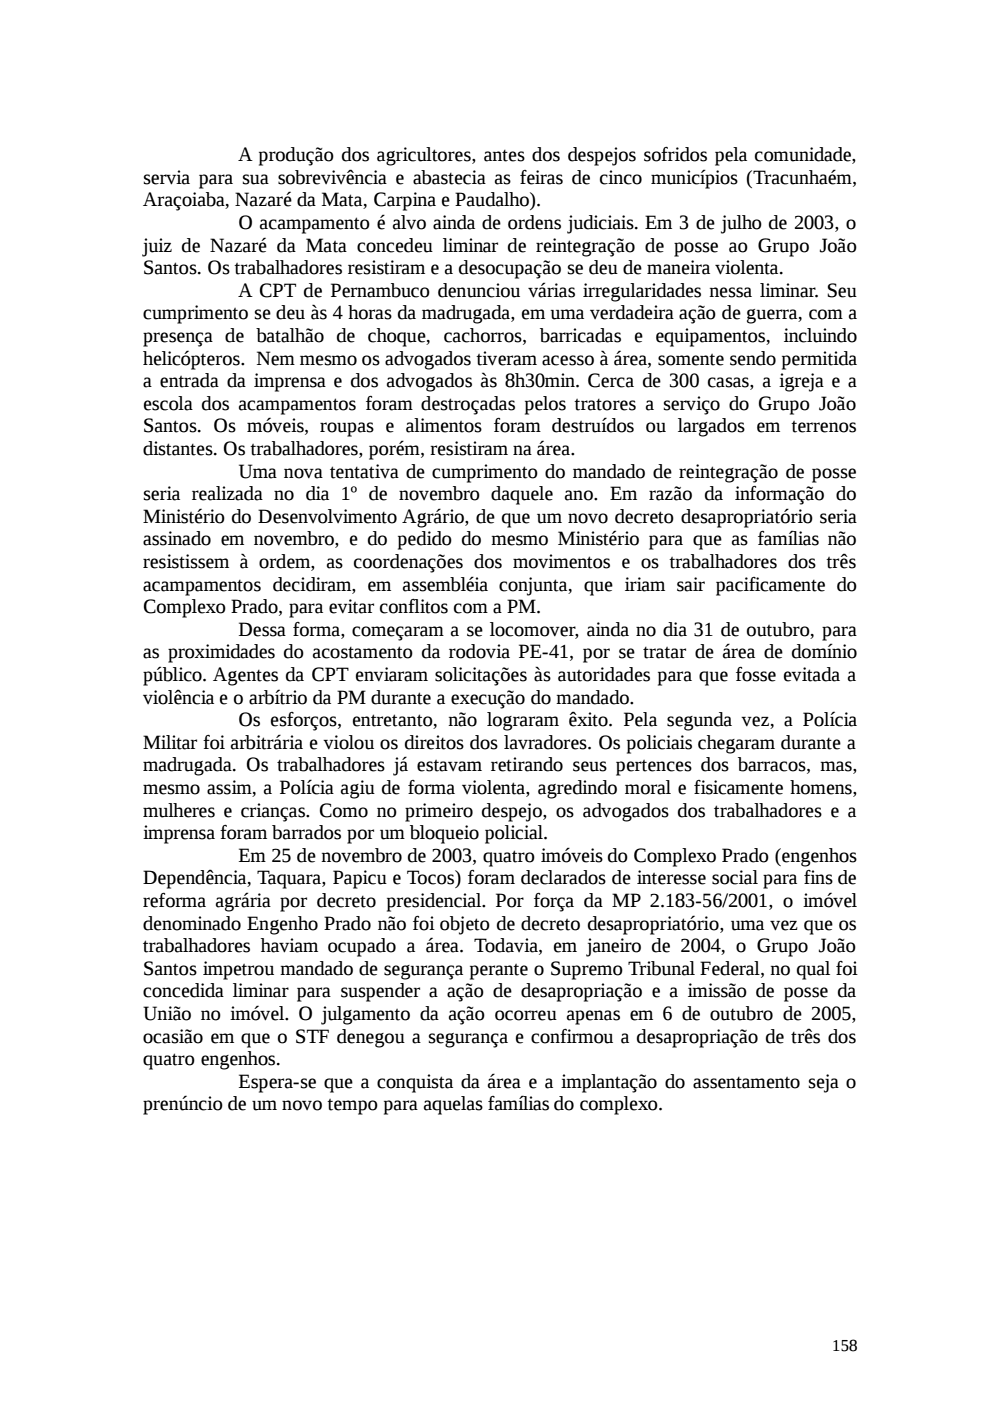 Page 158 from Relatório final da comissão